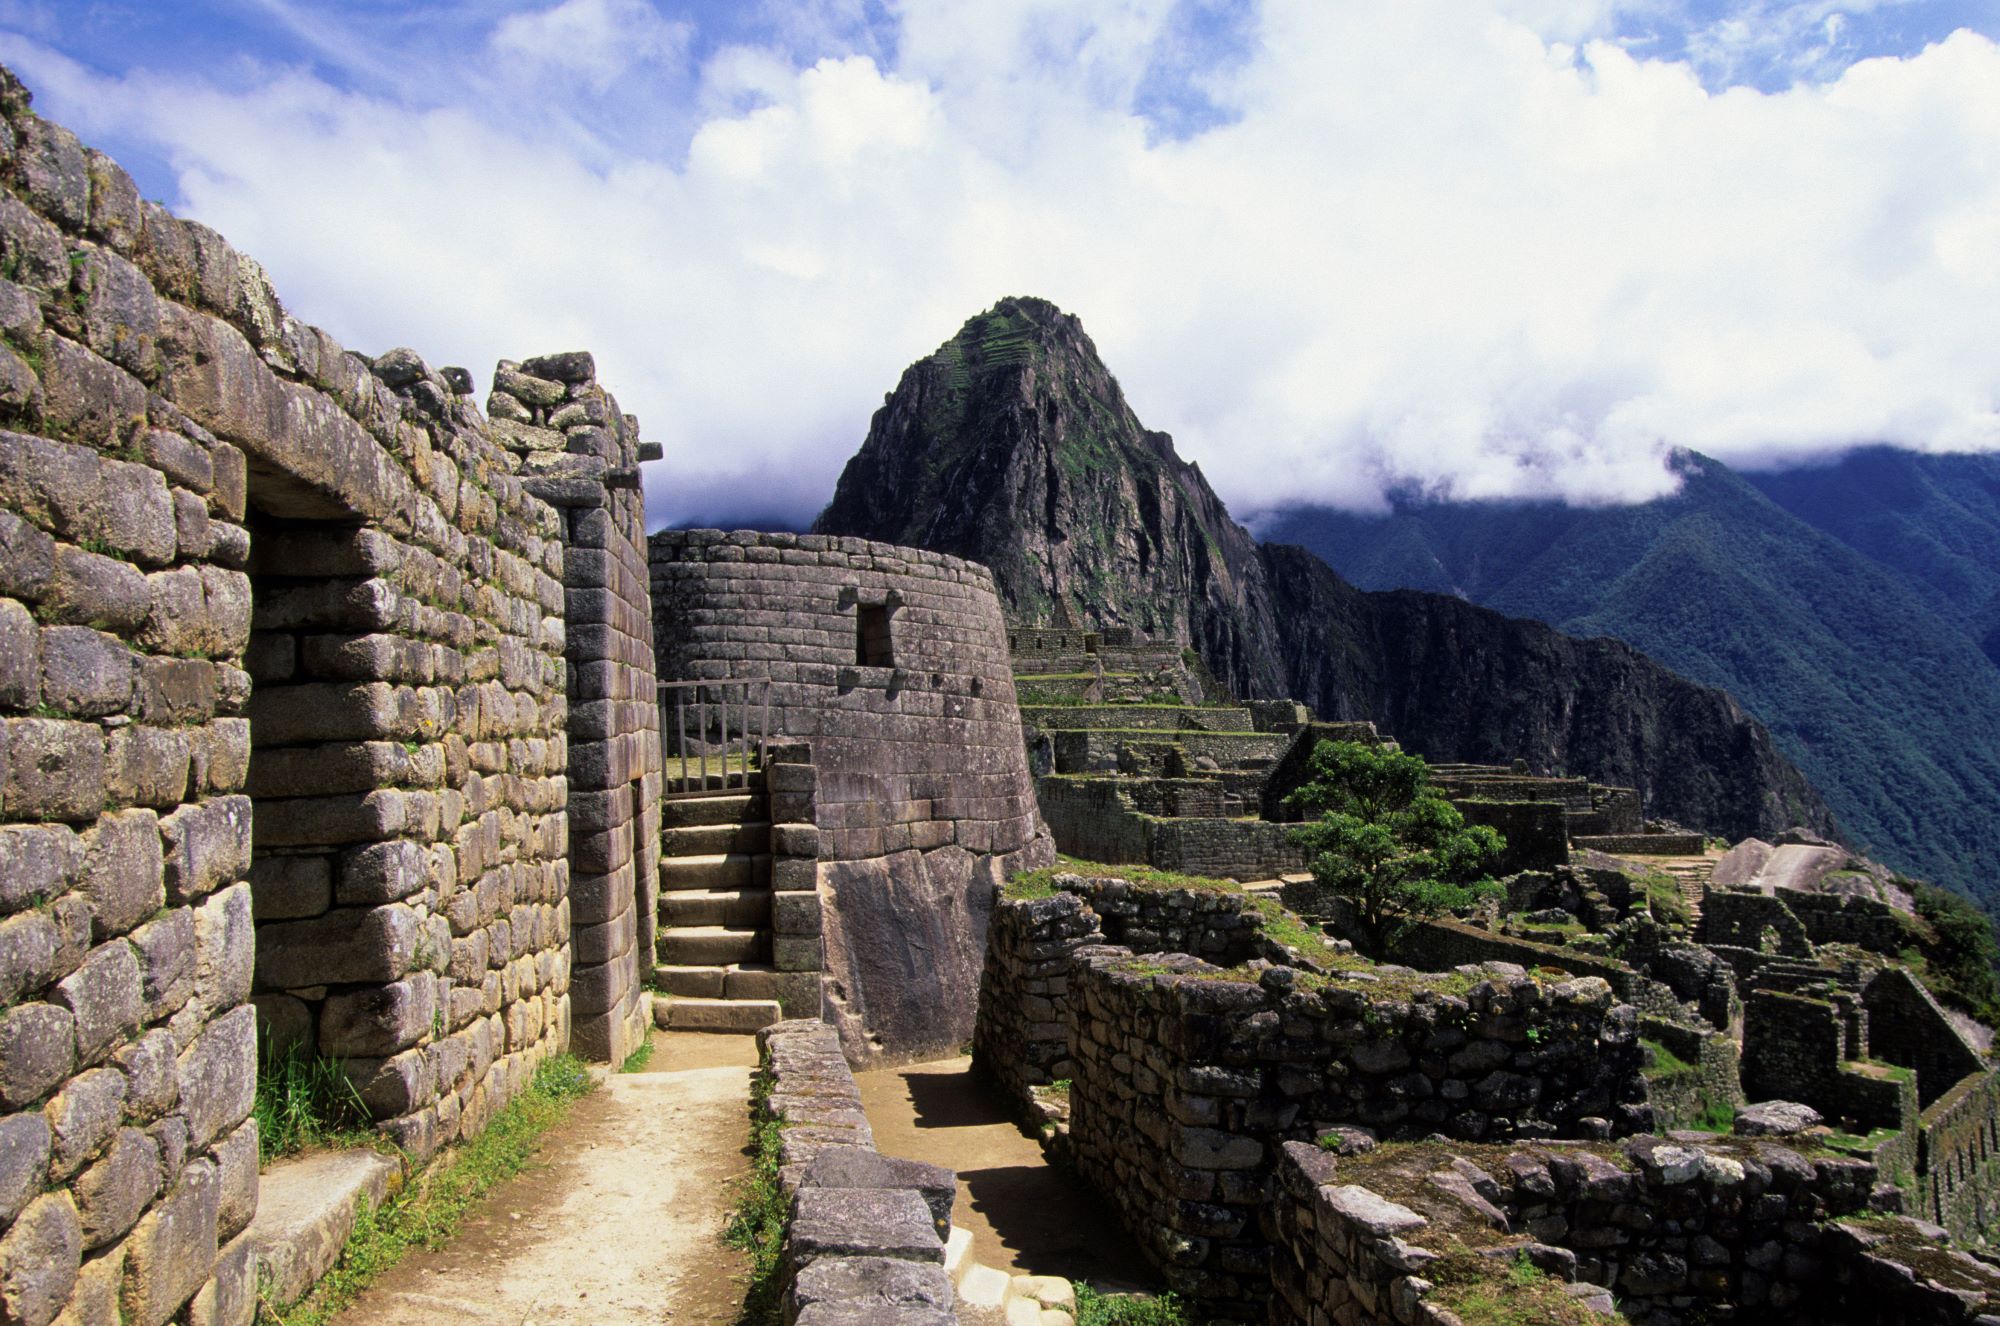 A stunning view of Machu Picchu